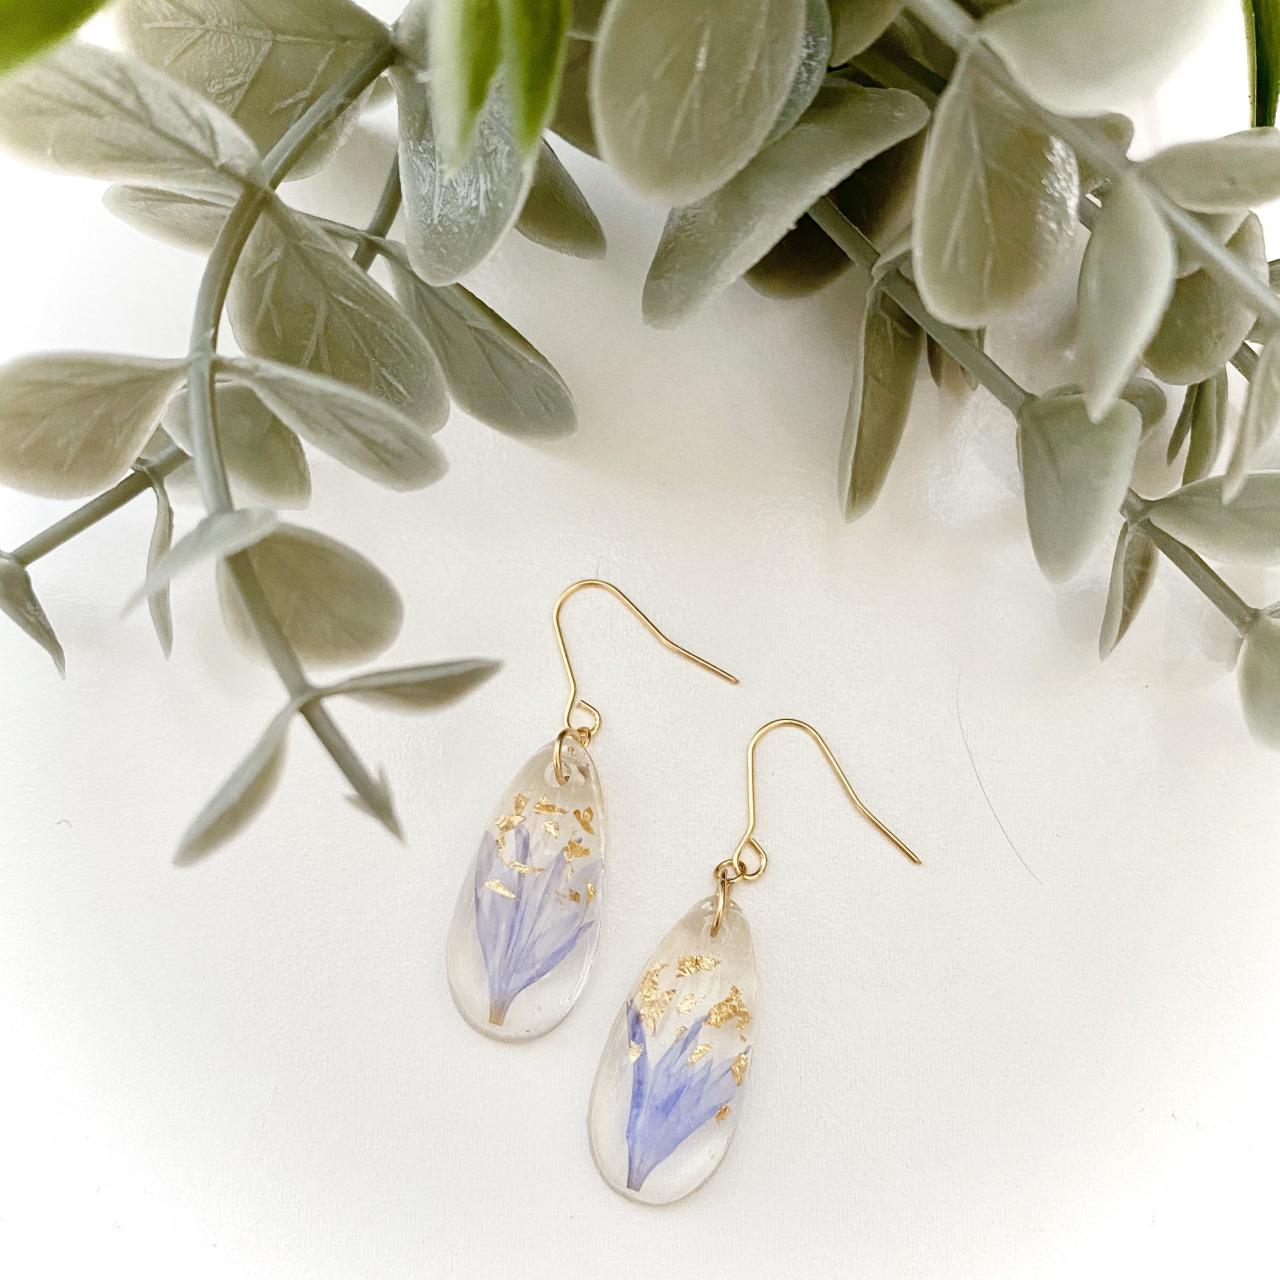 Resin Earrings, Real Pressed Dried Flowers Earrings/ Water Drop Resin Earrings